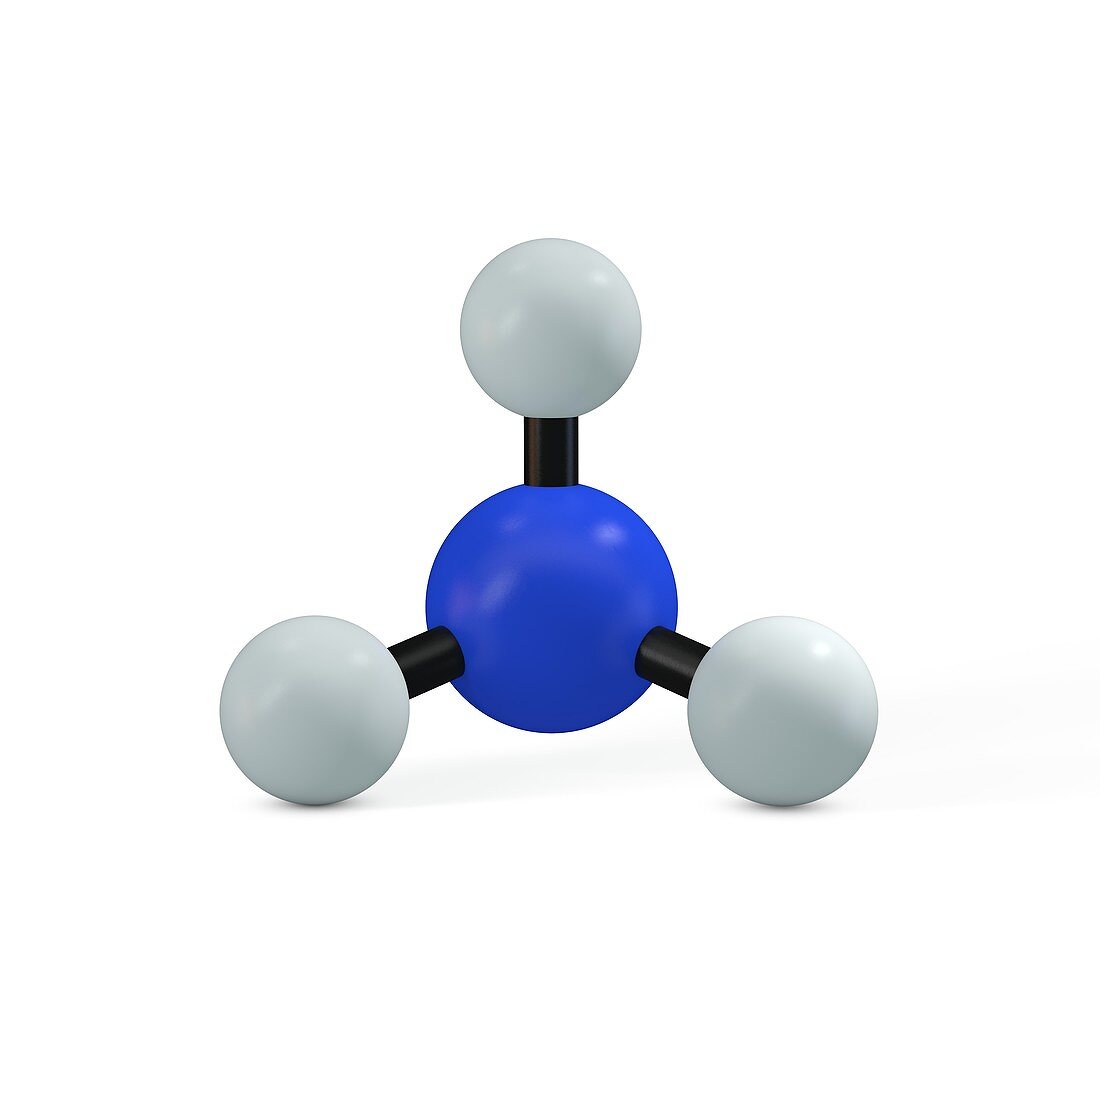 Ammonia molecule, illustration